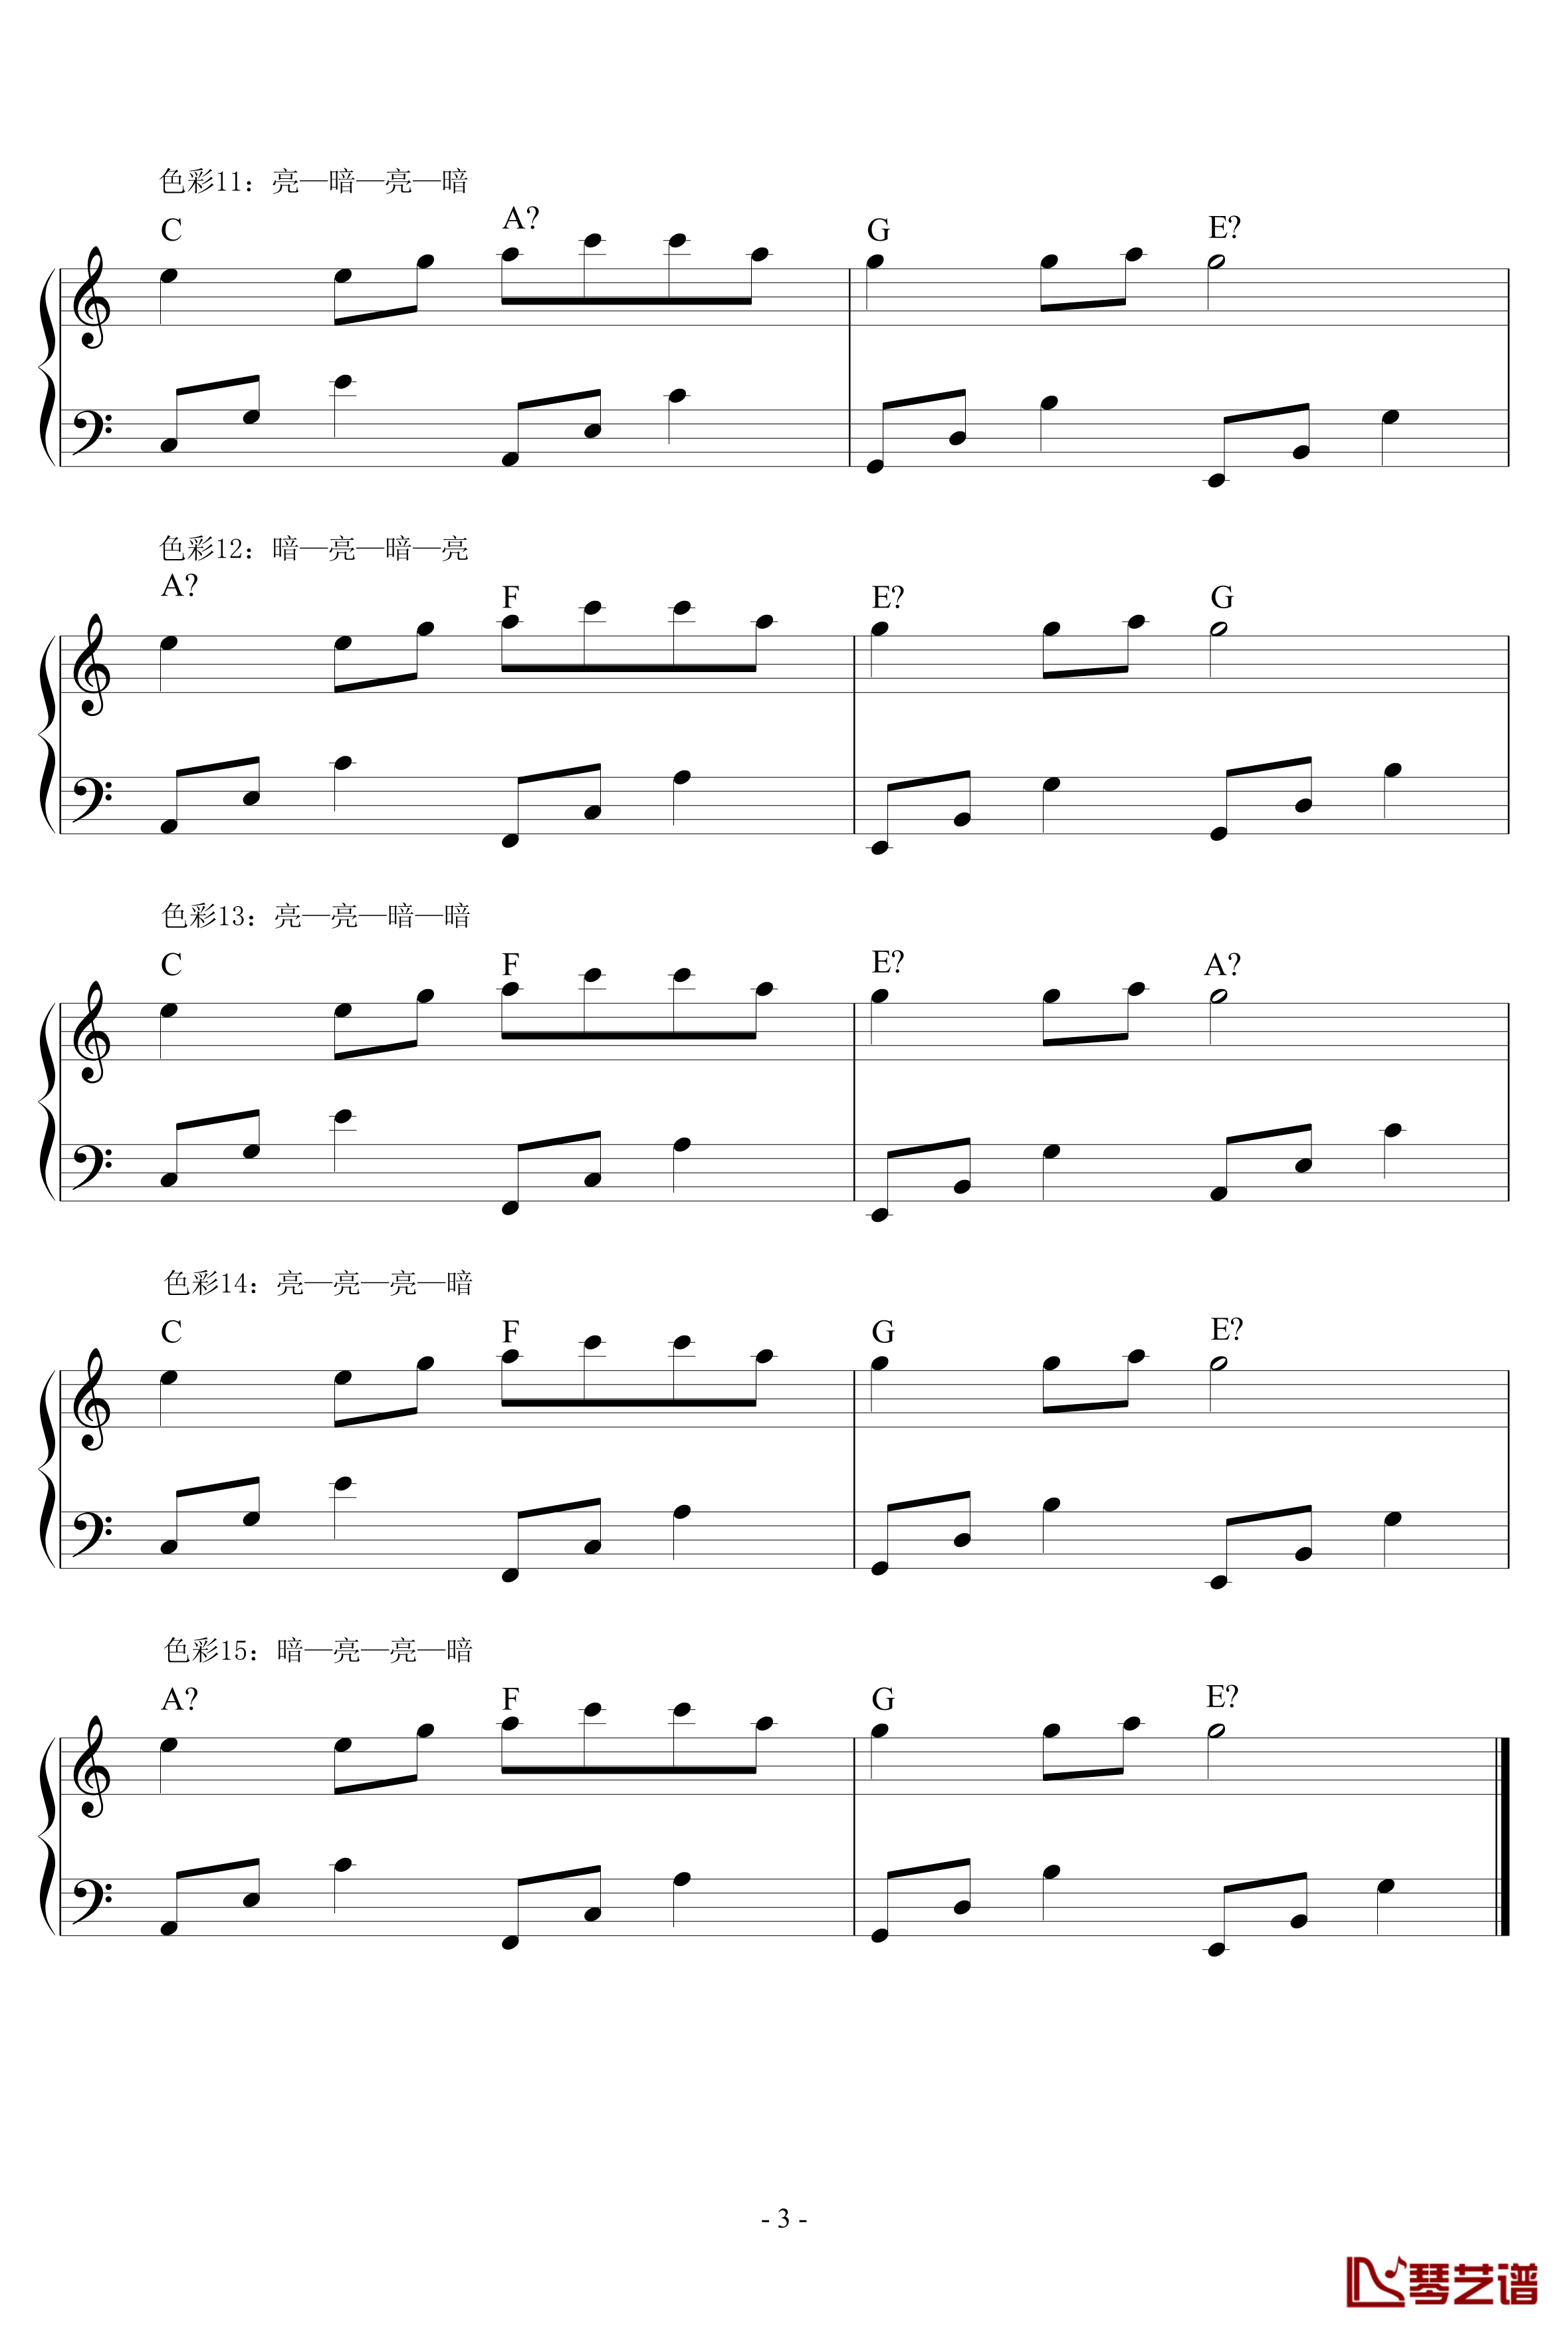 超实用即兴伴奏教材1钢琴谱-常用和弦-鸠玖3